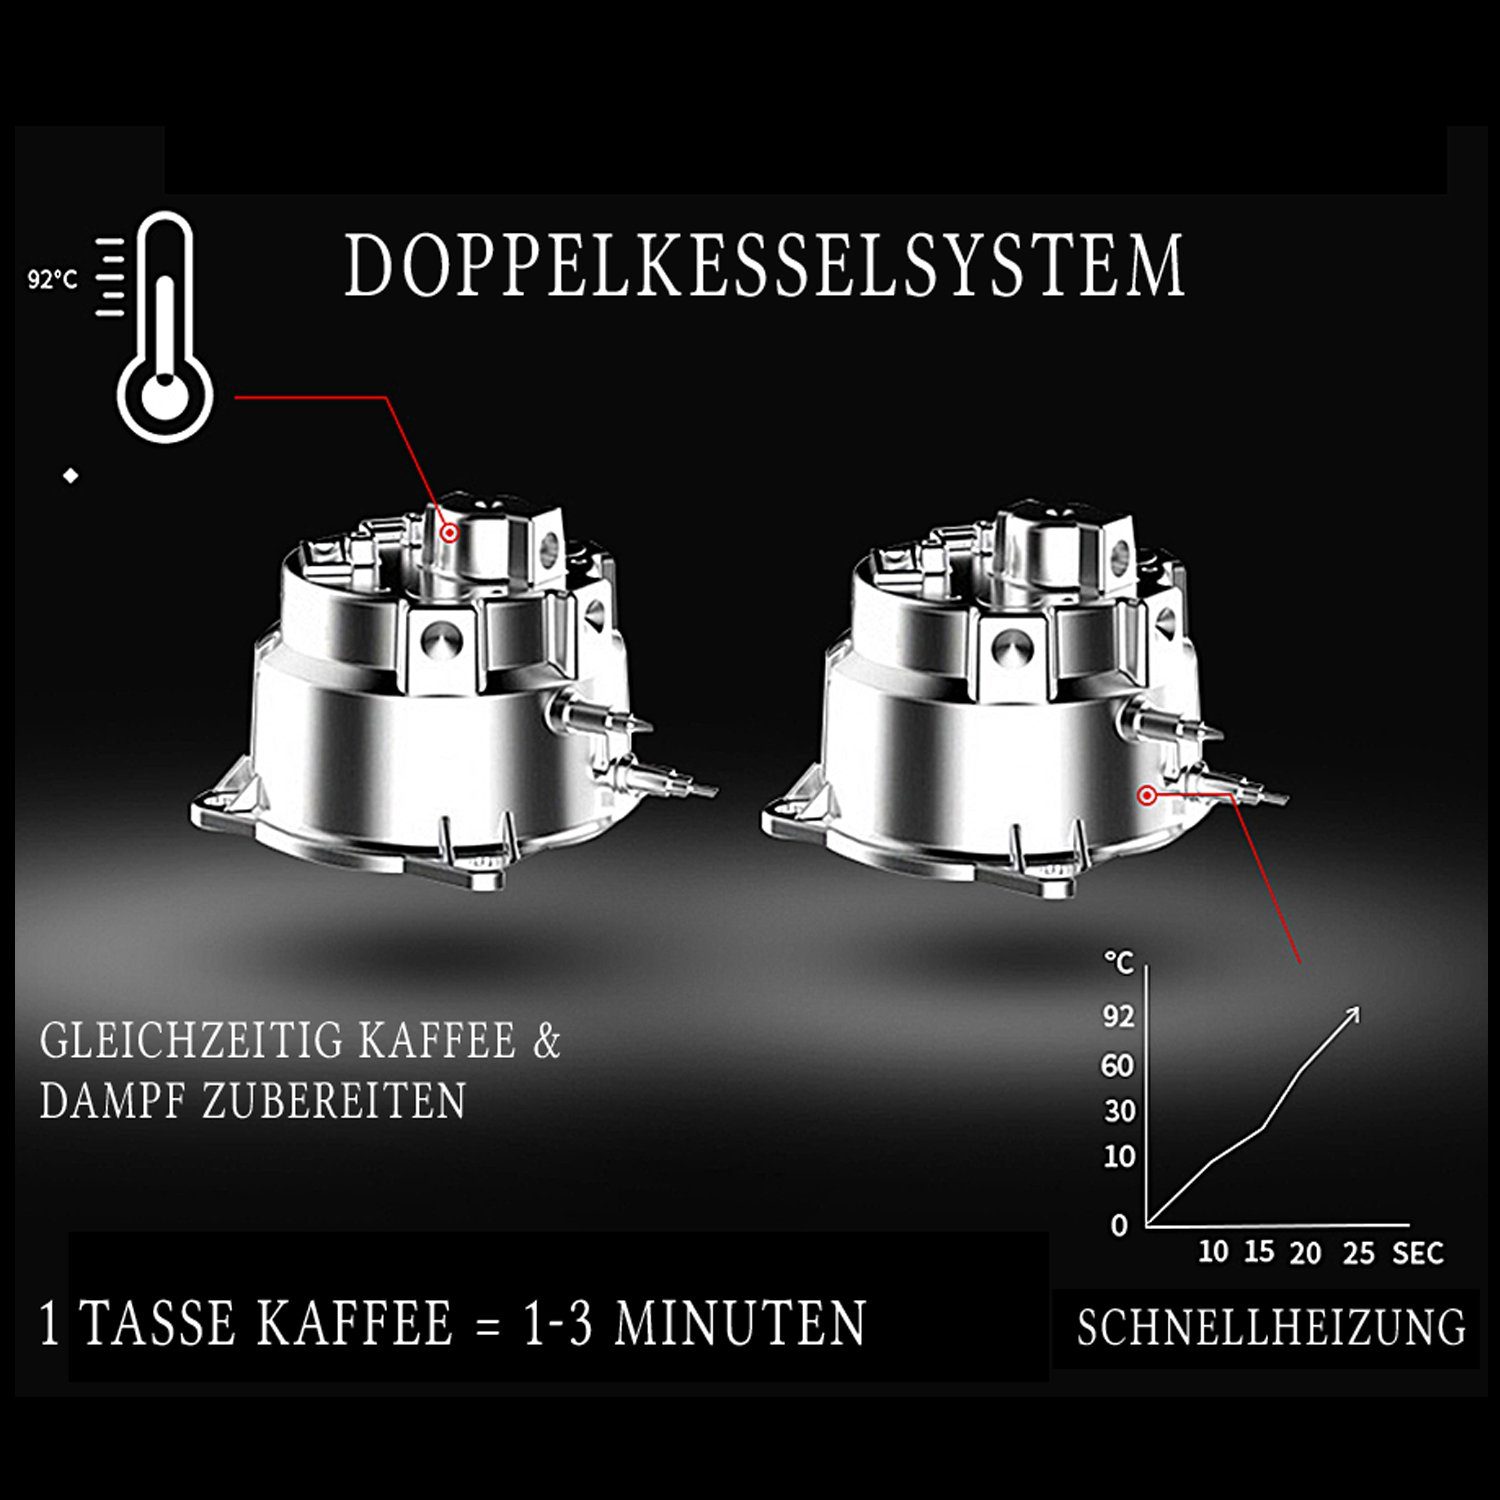 Kaffee-Rezeptbuch, Barletta, Kaffeevollautomat Acopino Doppelkesselsystem Anthrazyt